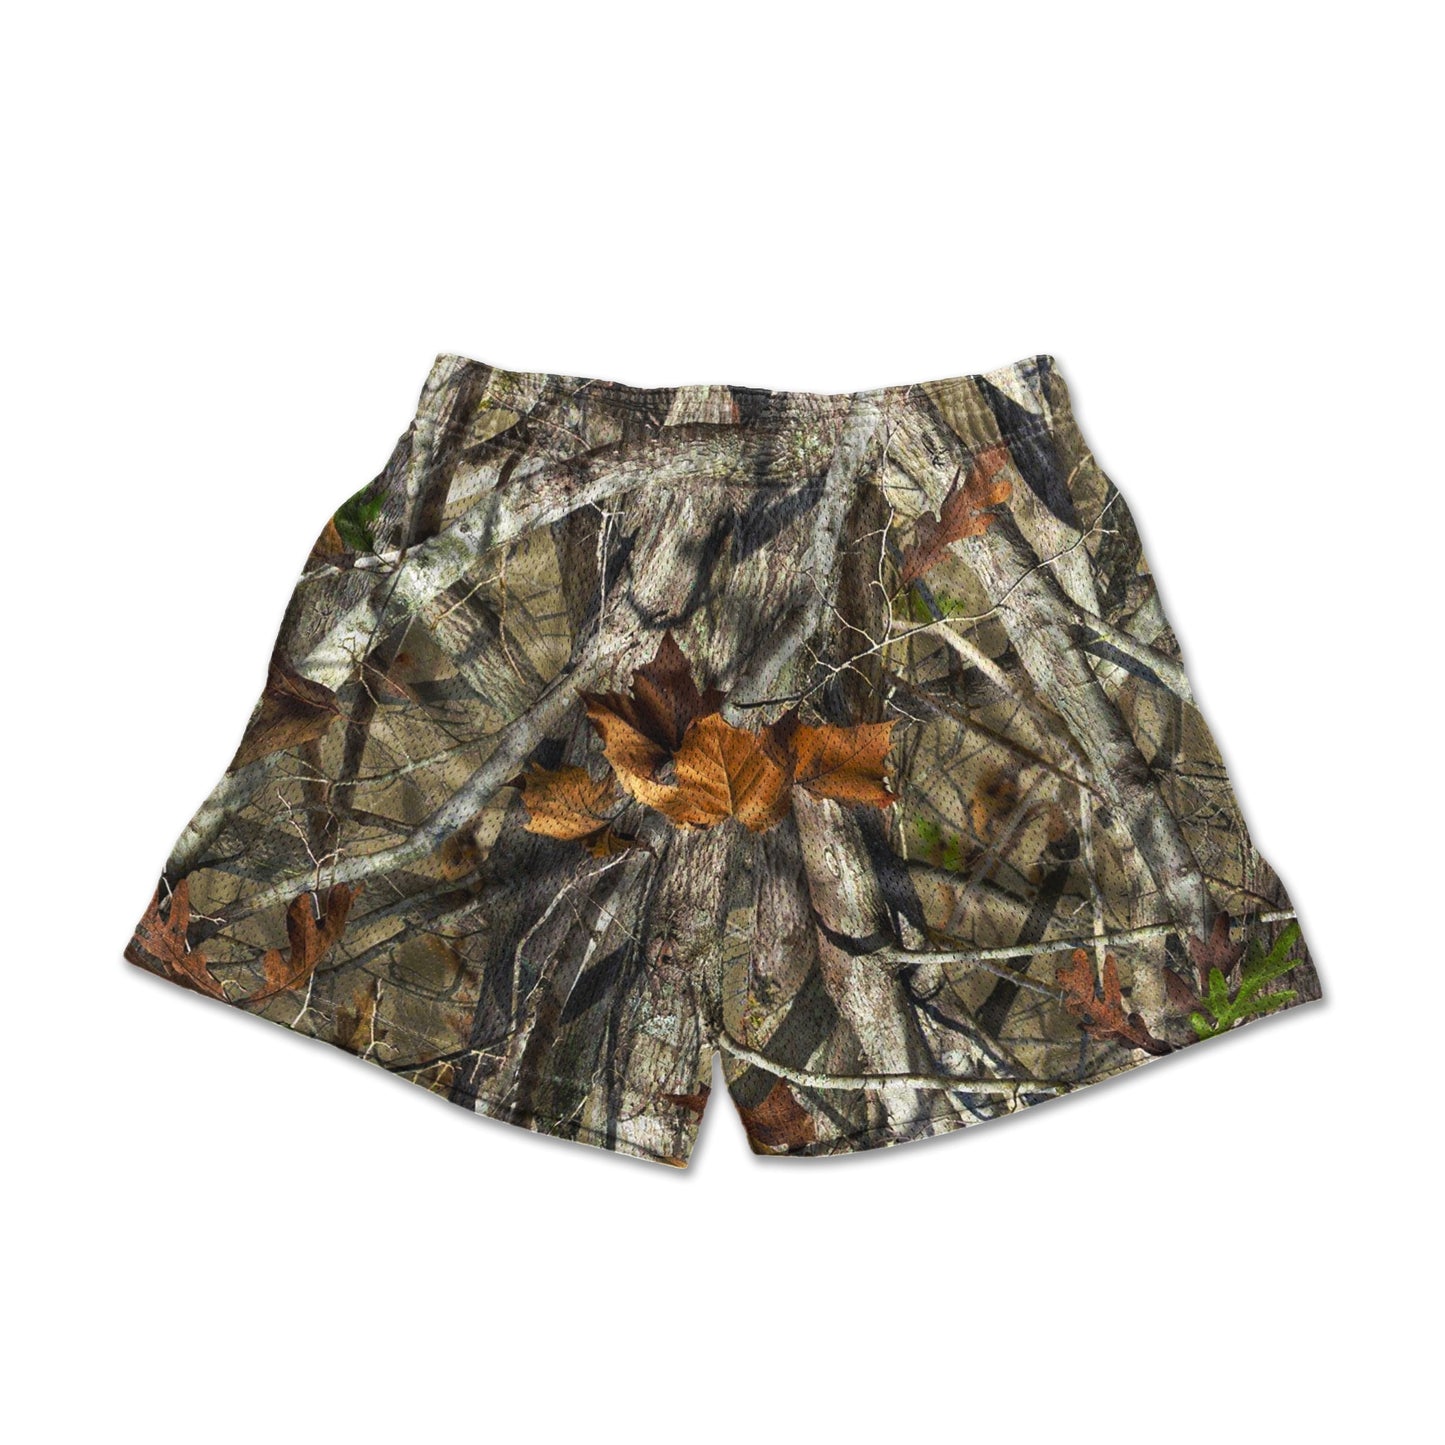 Stylish jungle pattern shorts